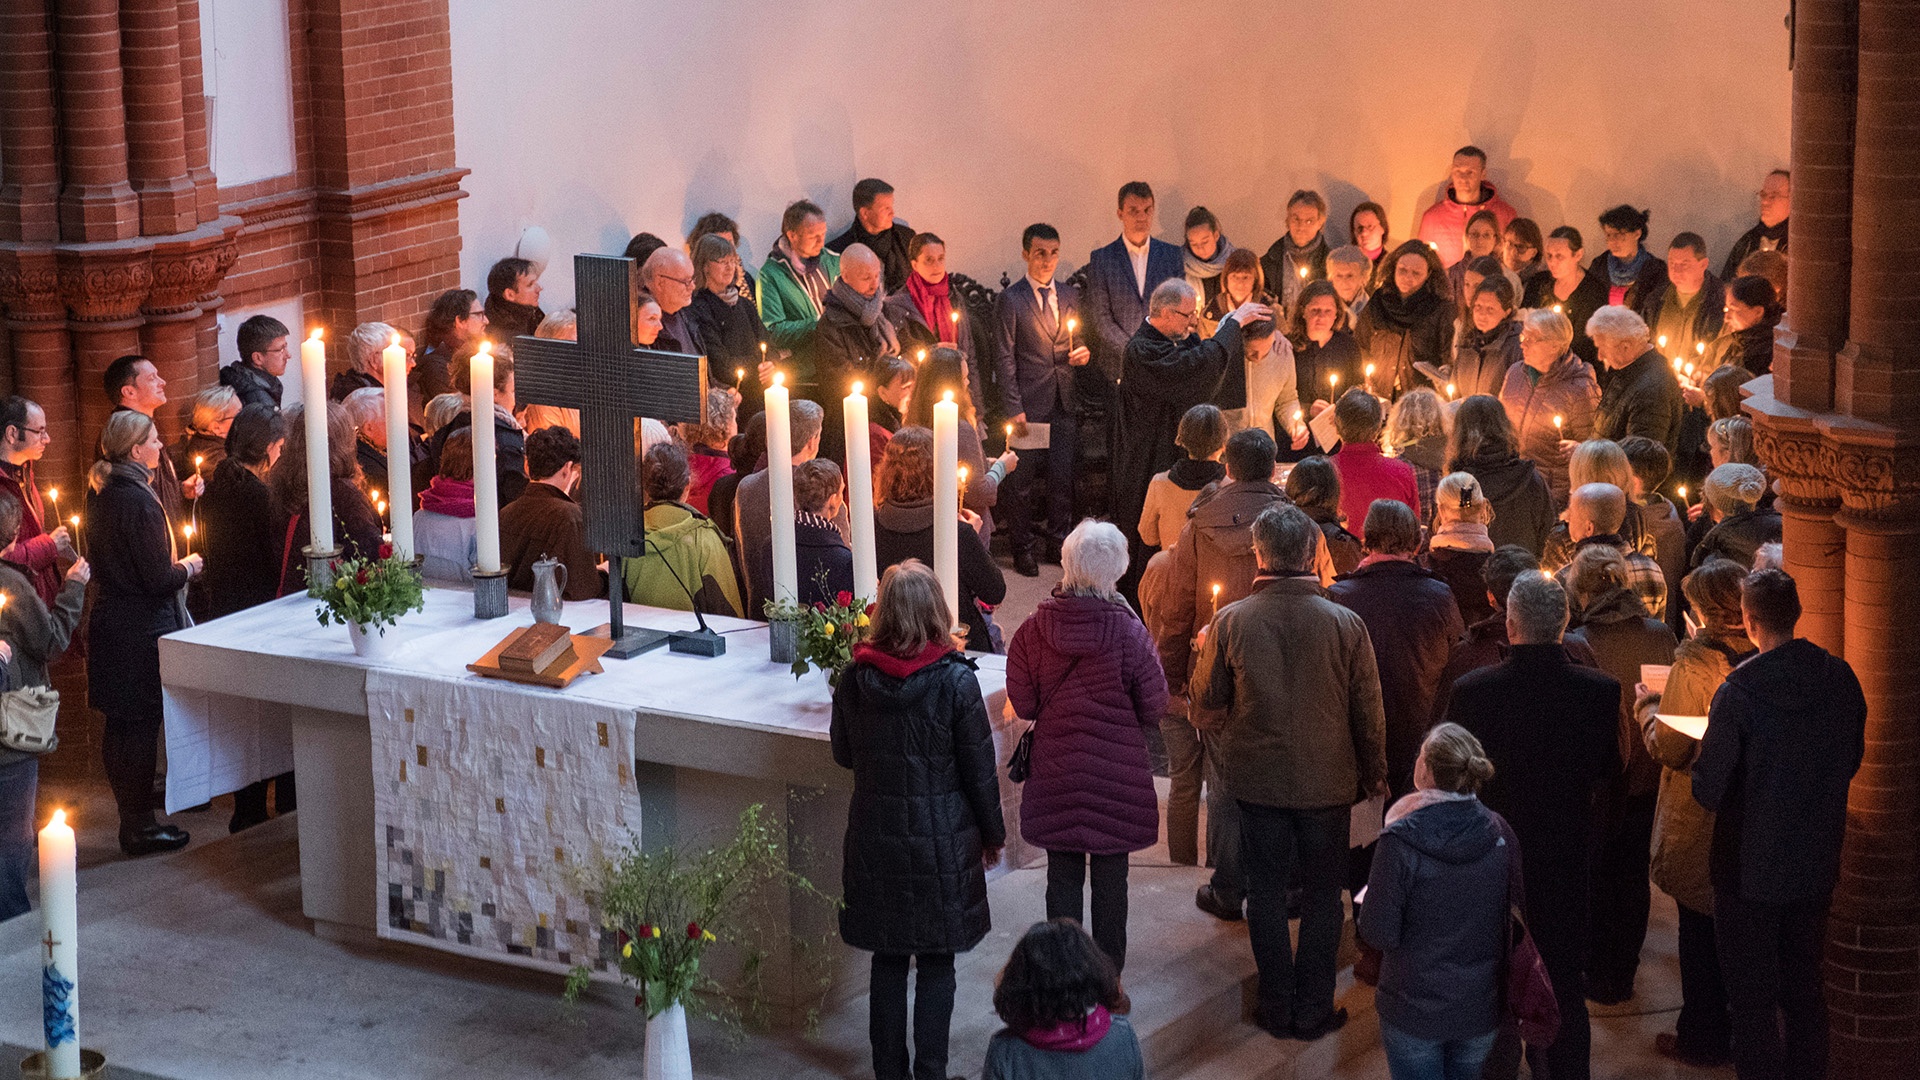 Osternachtgottesdienst am Ostersonntagmorgen in der Gethsemanekirche in Berlin